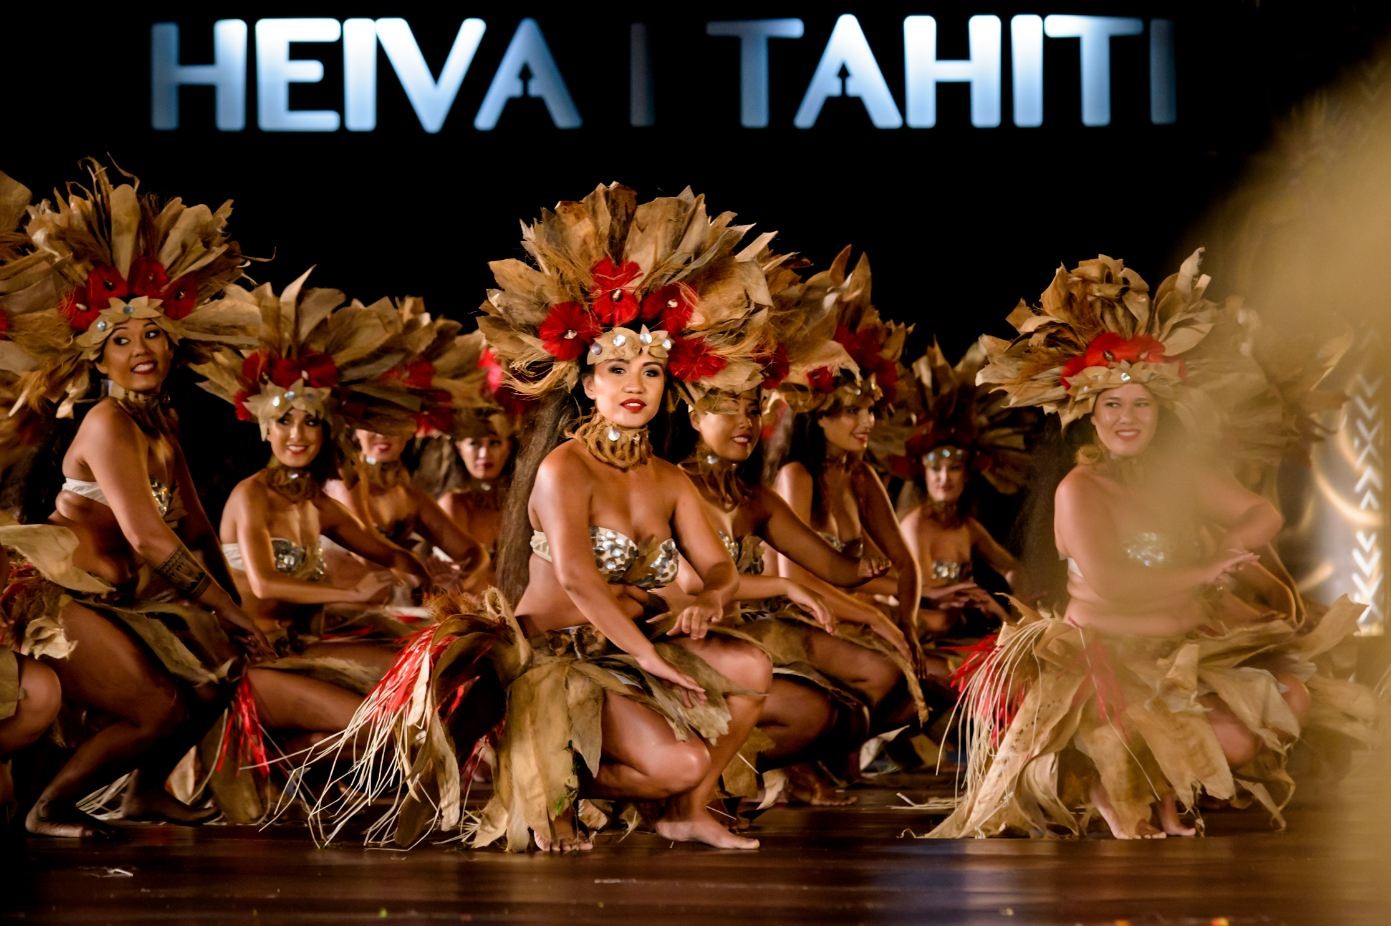 HEIVA I TAHITI: A LUGLIO IL FESTIVAL PIU’ SUGGESTIVO DE LE ISOLE DI TAHITI